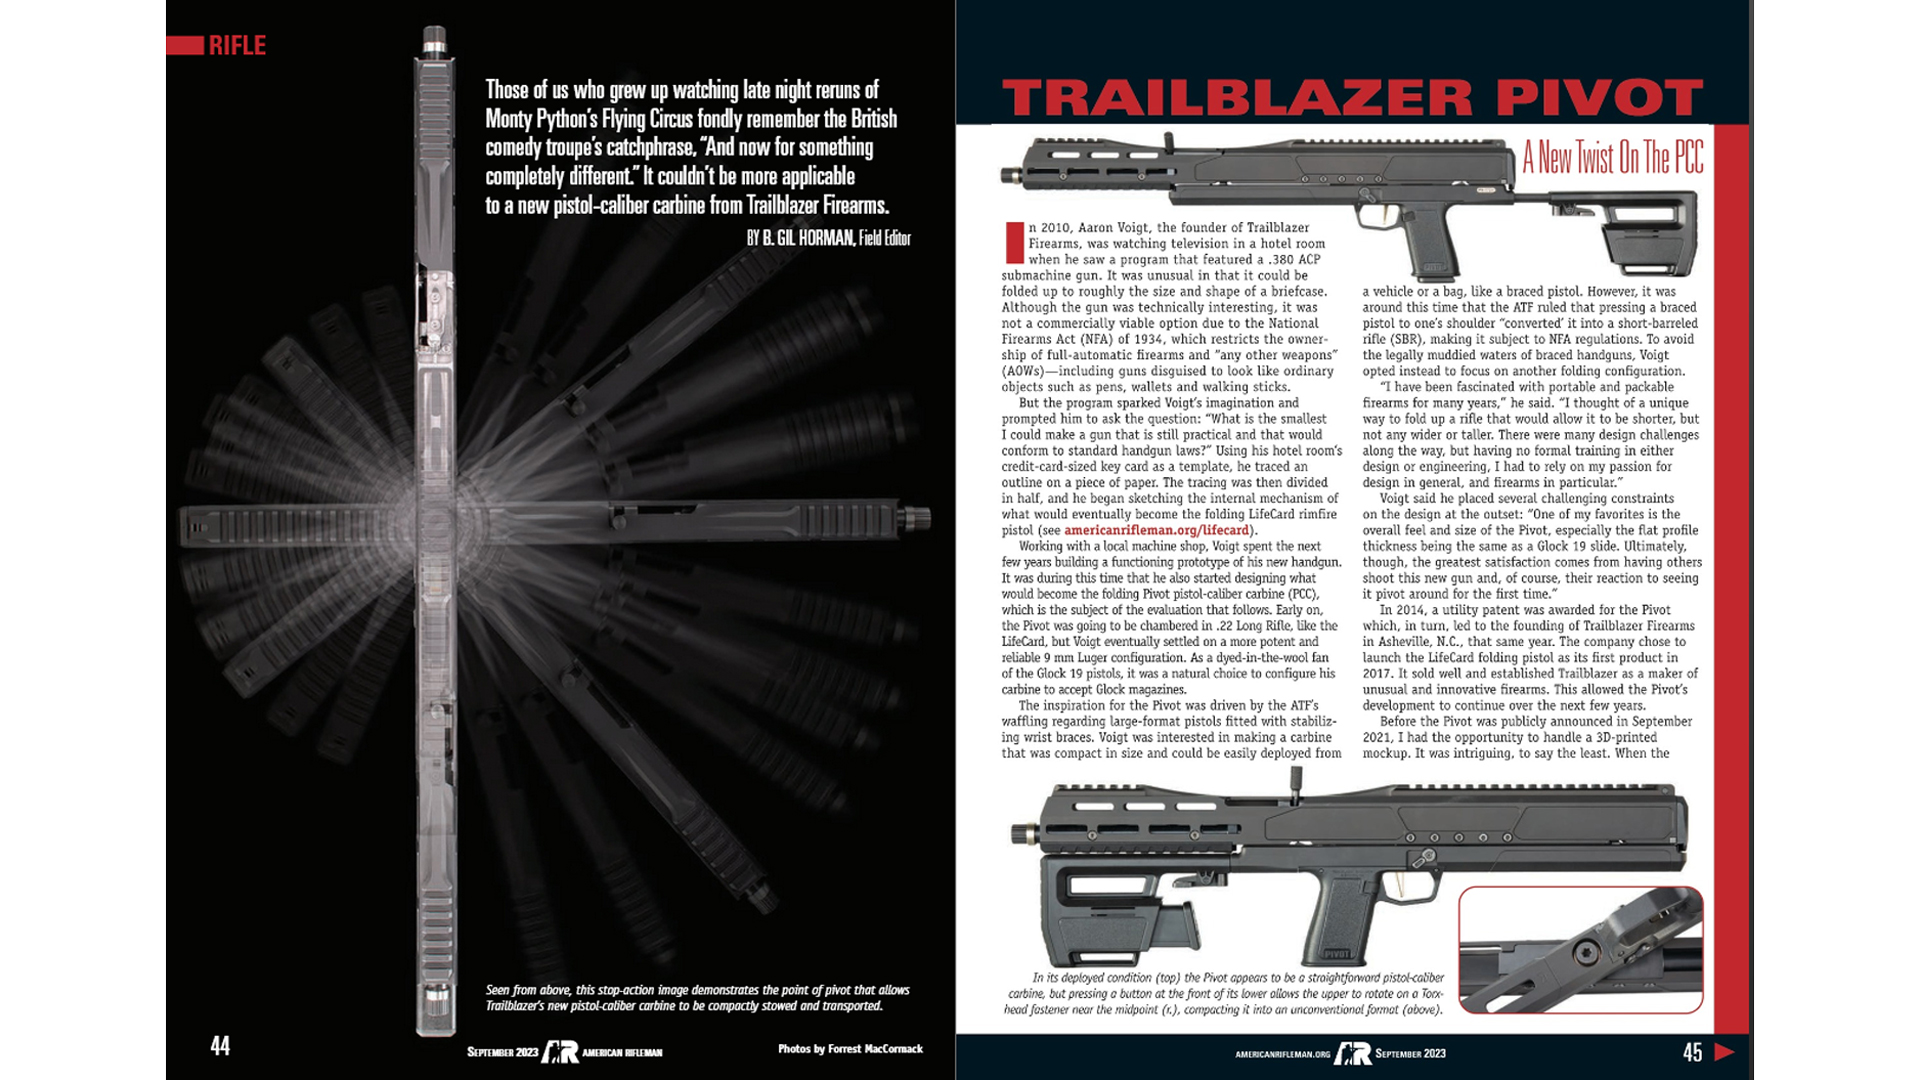 American Rifleman centerfold magazine article trailblazer firearms pivot rifle b. gil horman review text guns